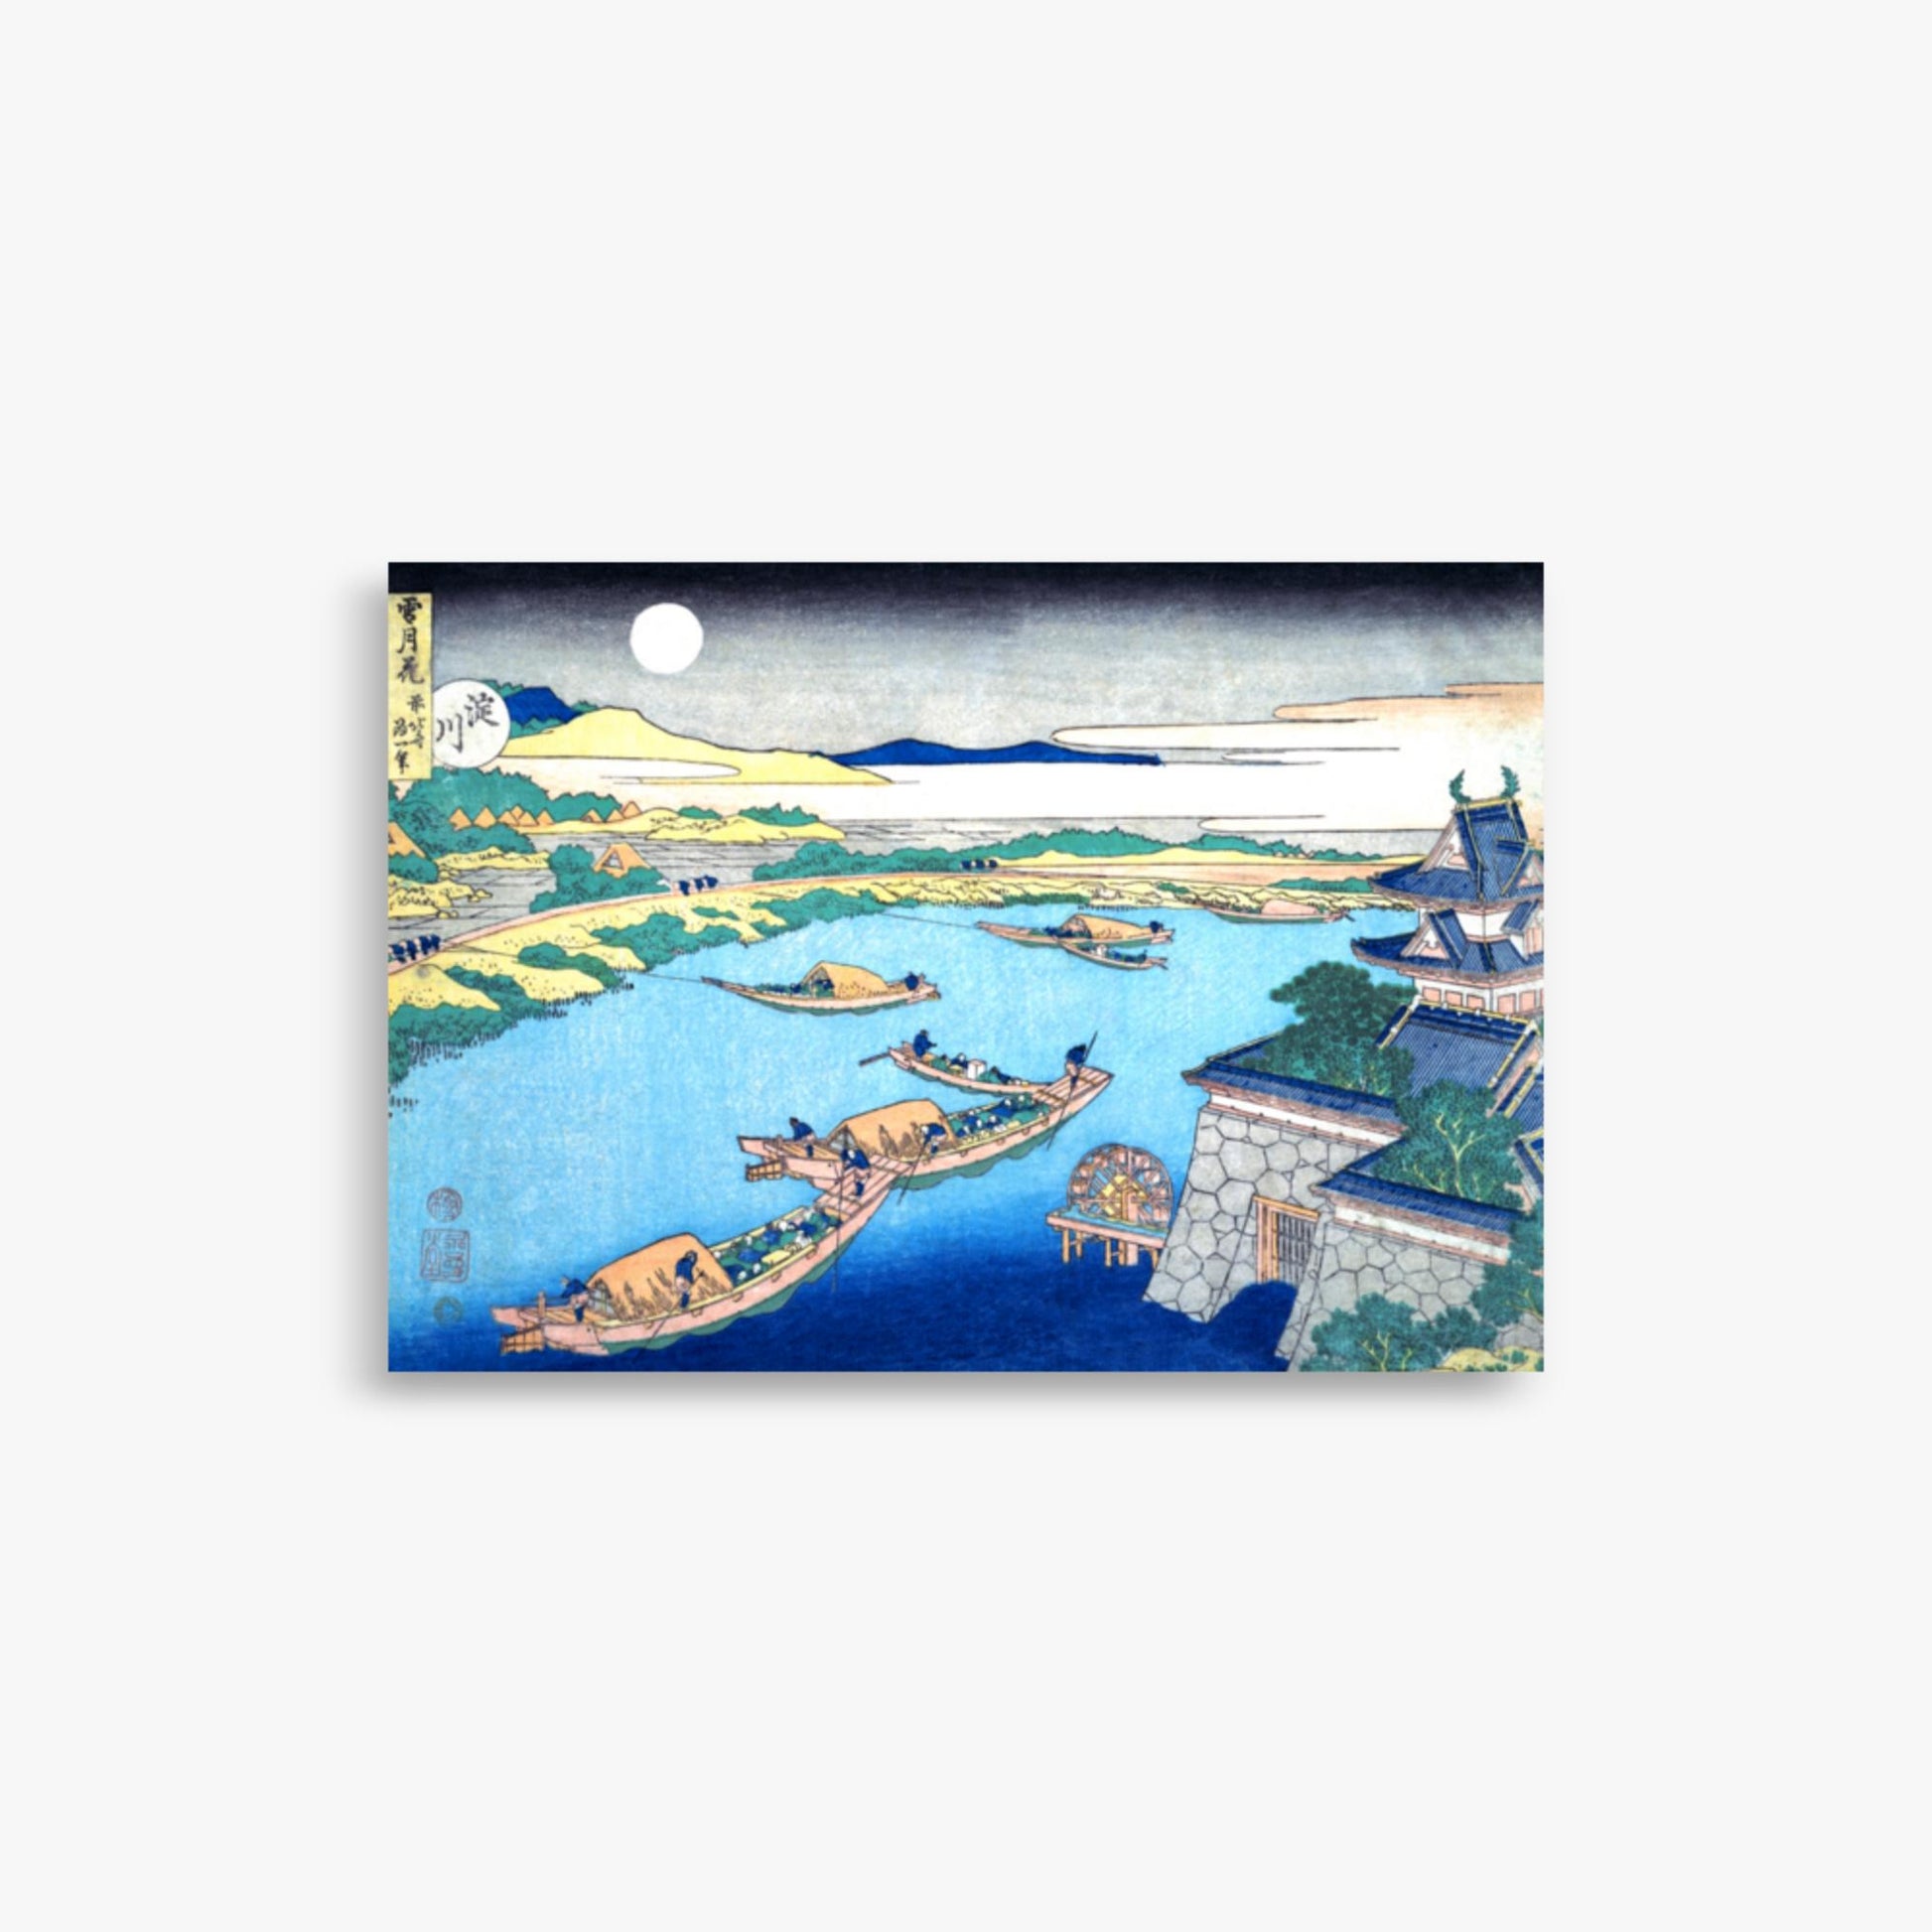 Katsushika Hokusai - Moonlight on the Yodo River 21x30 cm Poster